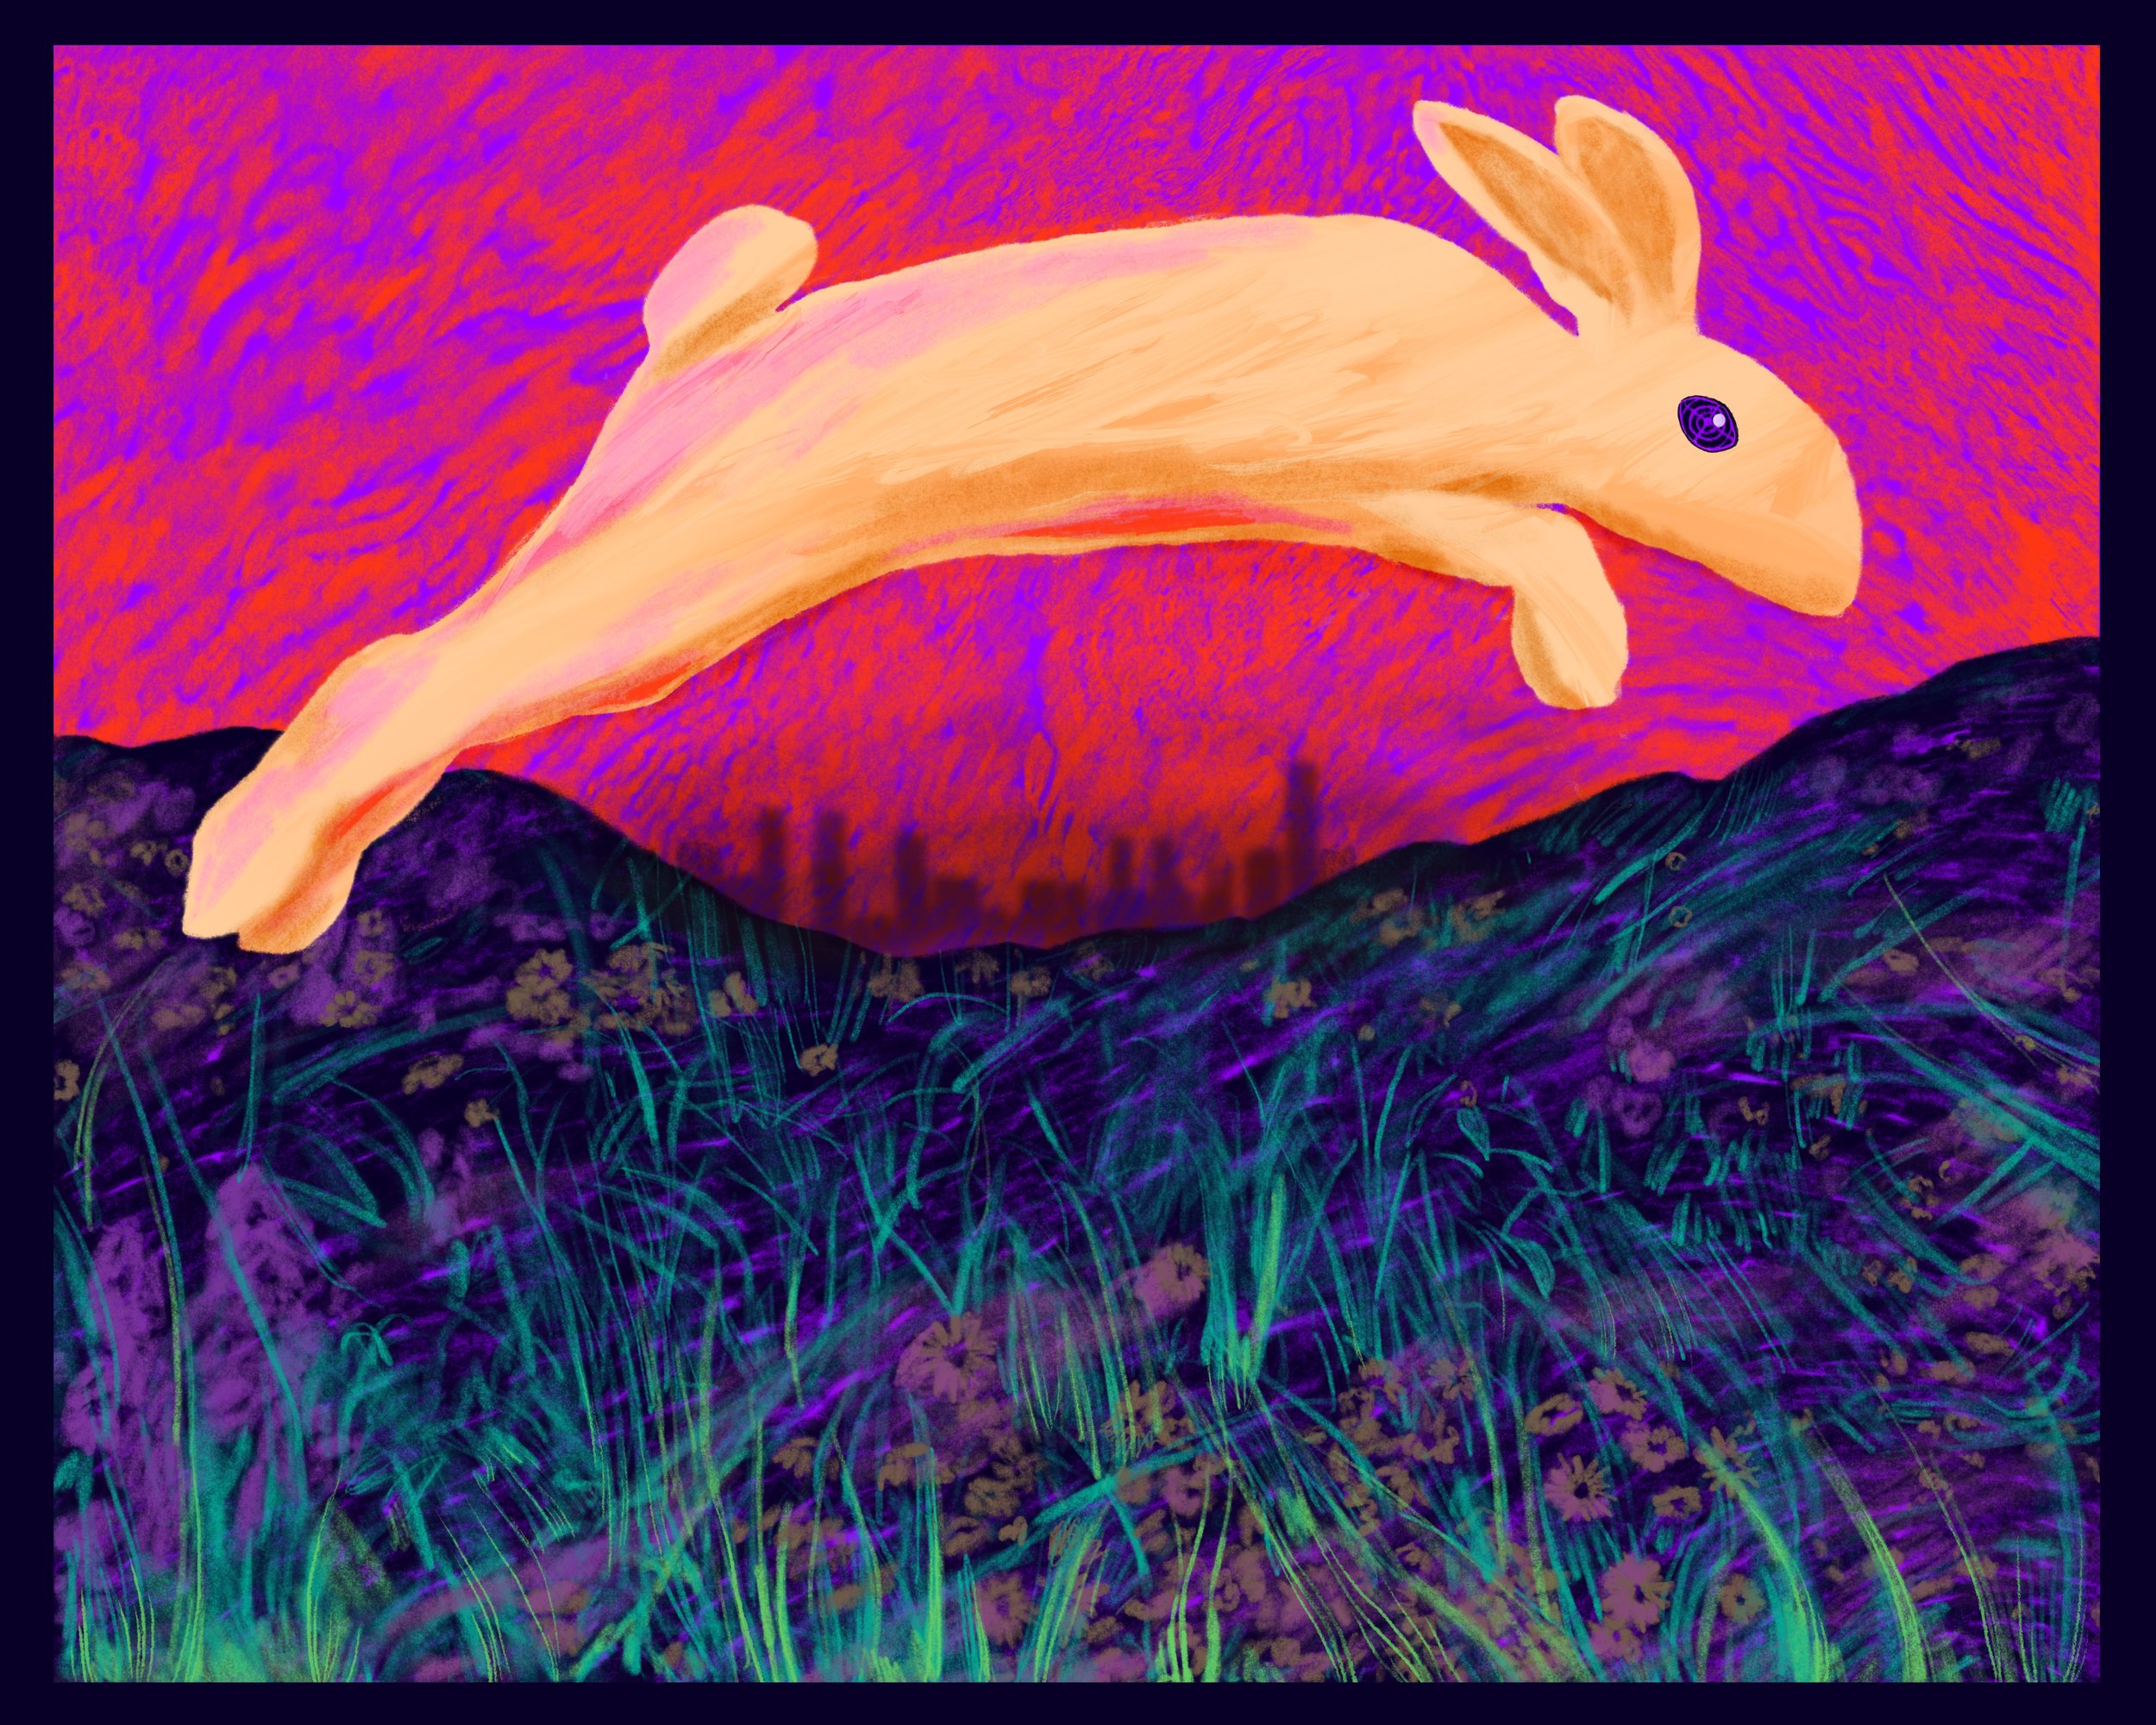 Apocalyptic Rabbits II